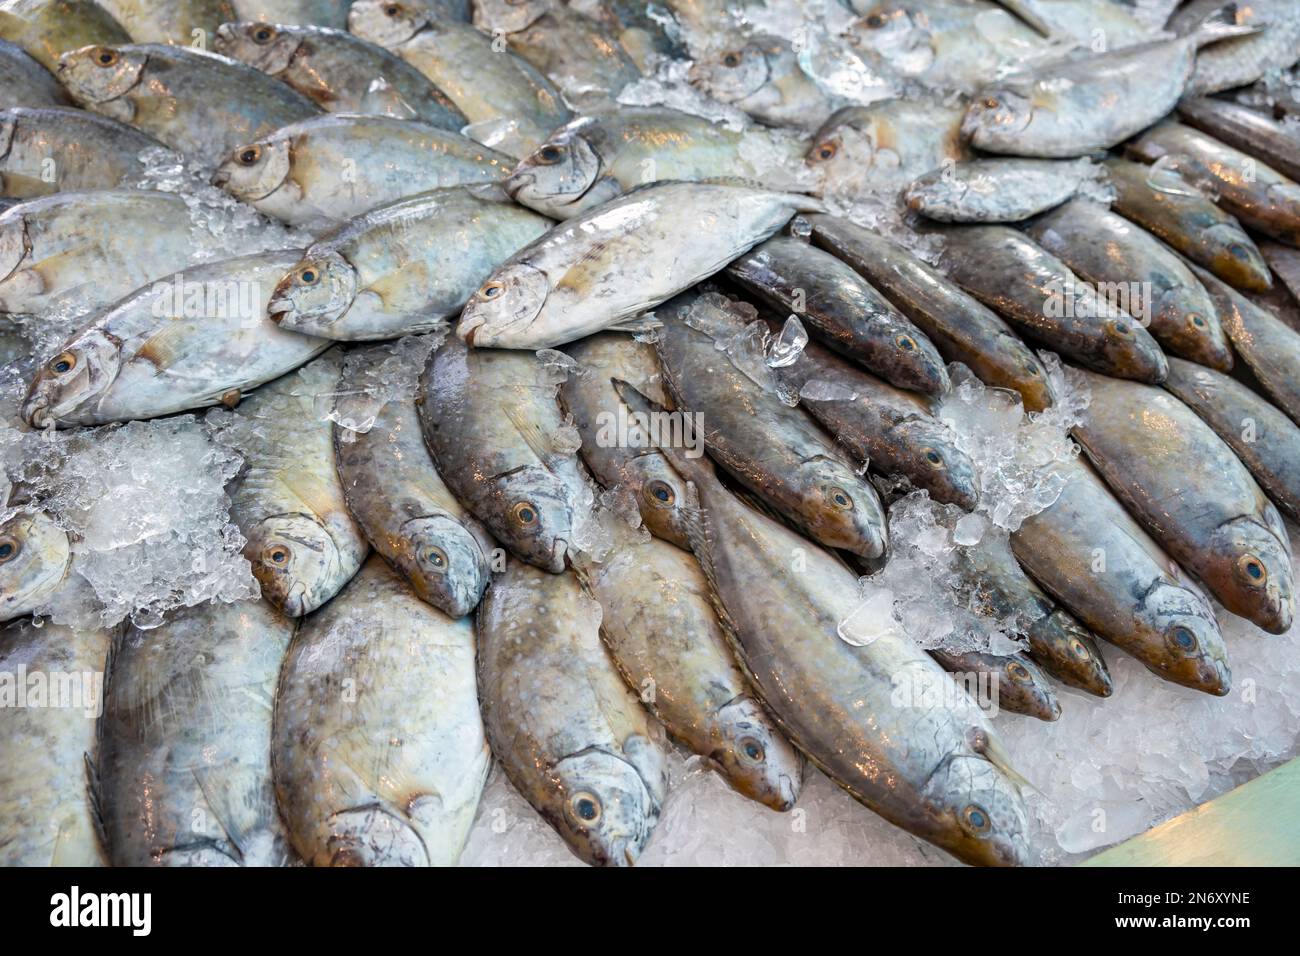 Kaninchenfisch, Fischmarkt im Mina District, alter Hafen von Doha, KatarQatar Stockfoto